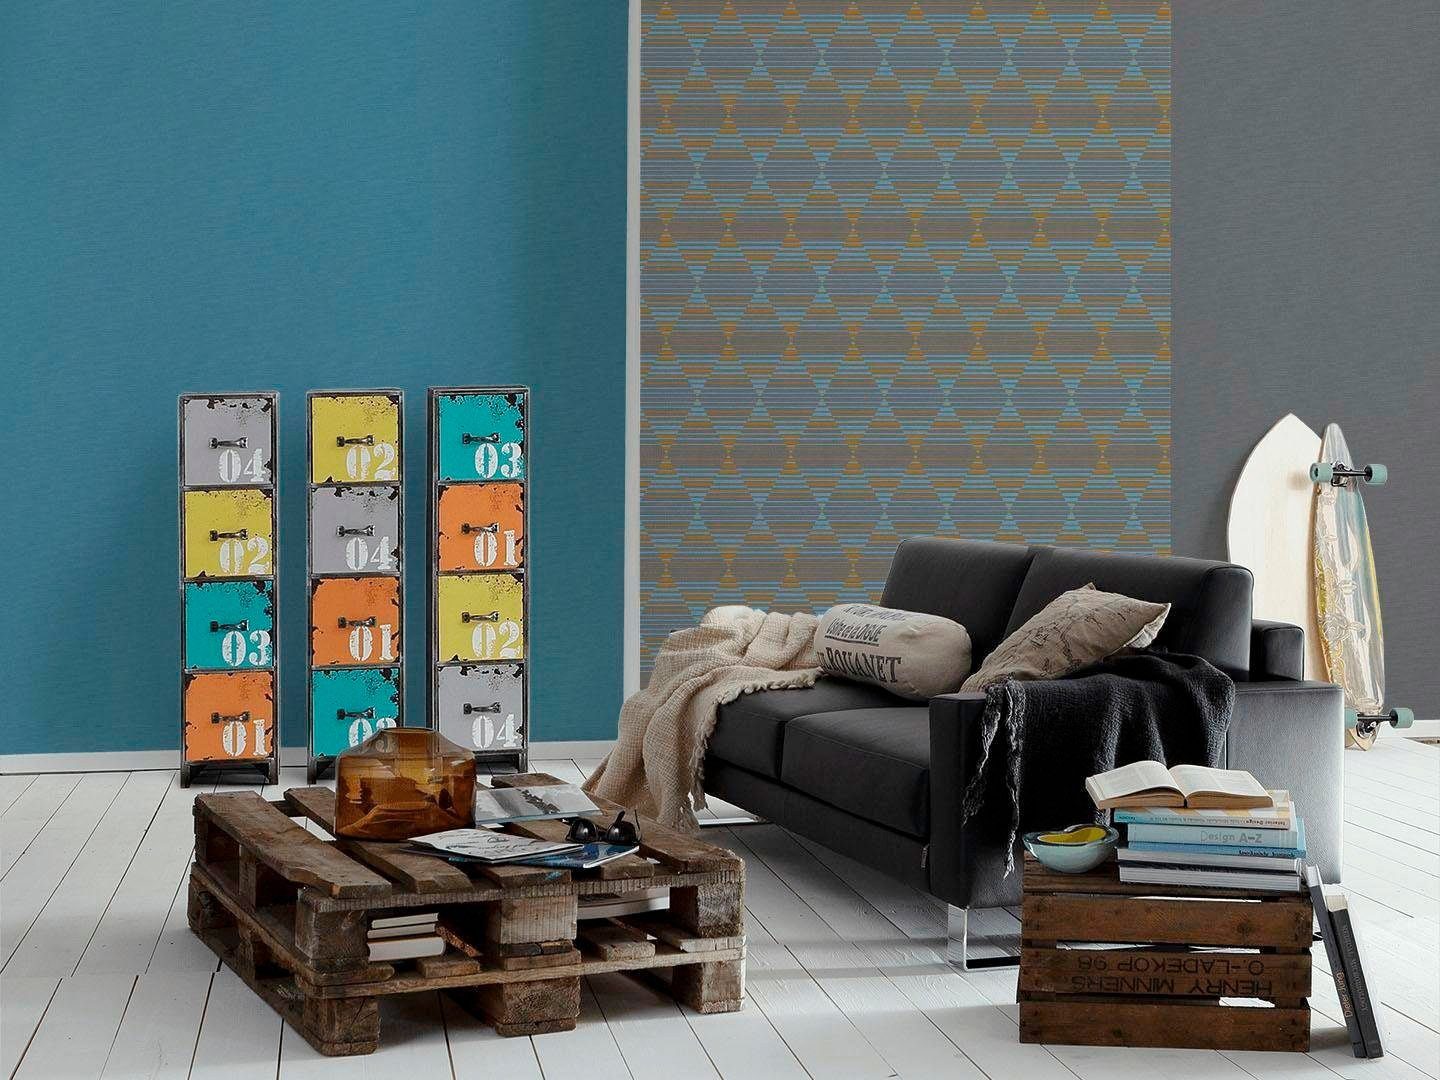 Vliestapete geometrisch, dunkelgrau/blau/gelb Linen walls A.S. living Création Style, grafisch